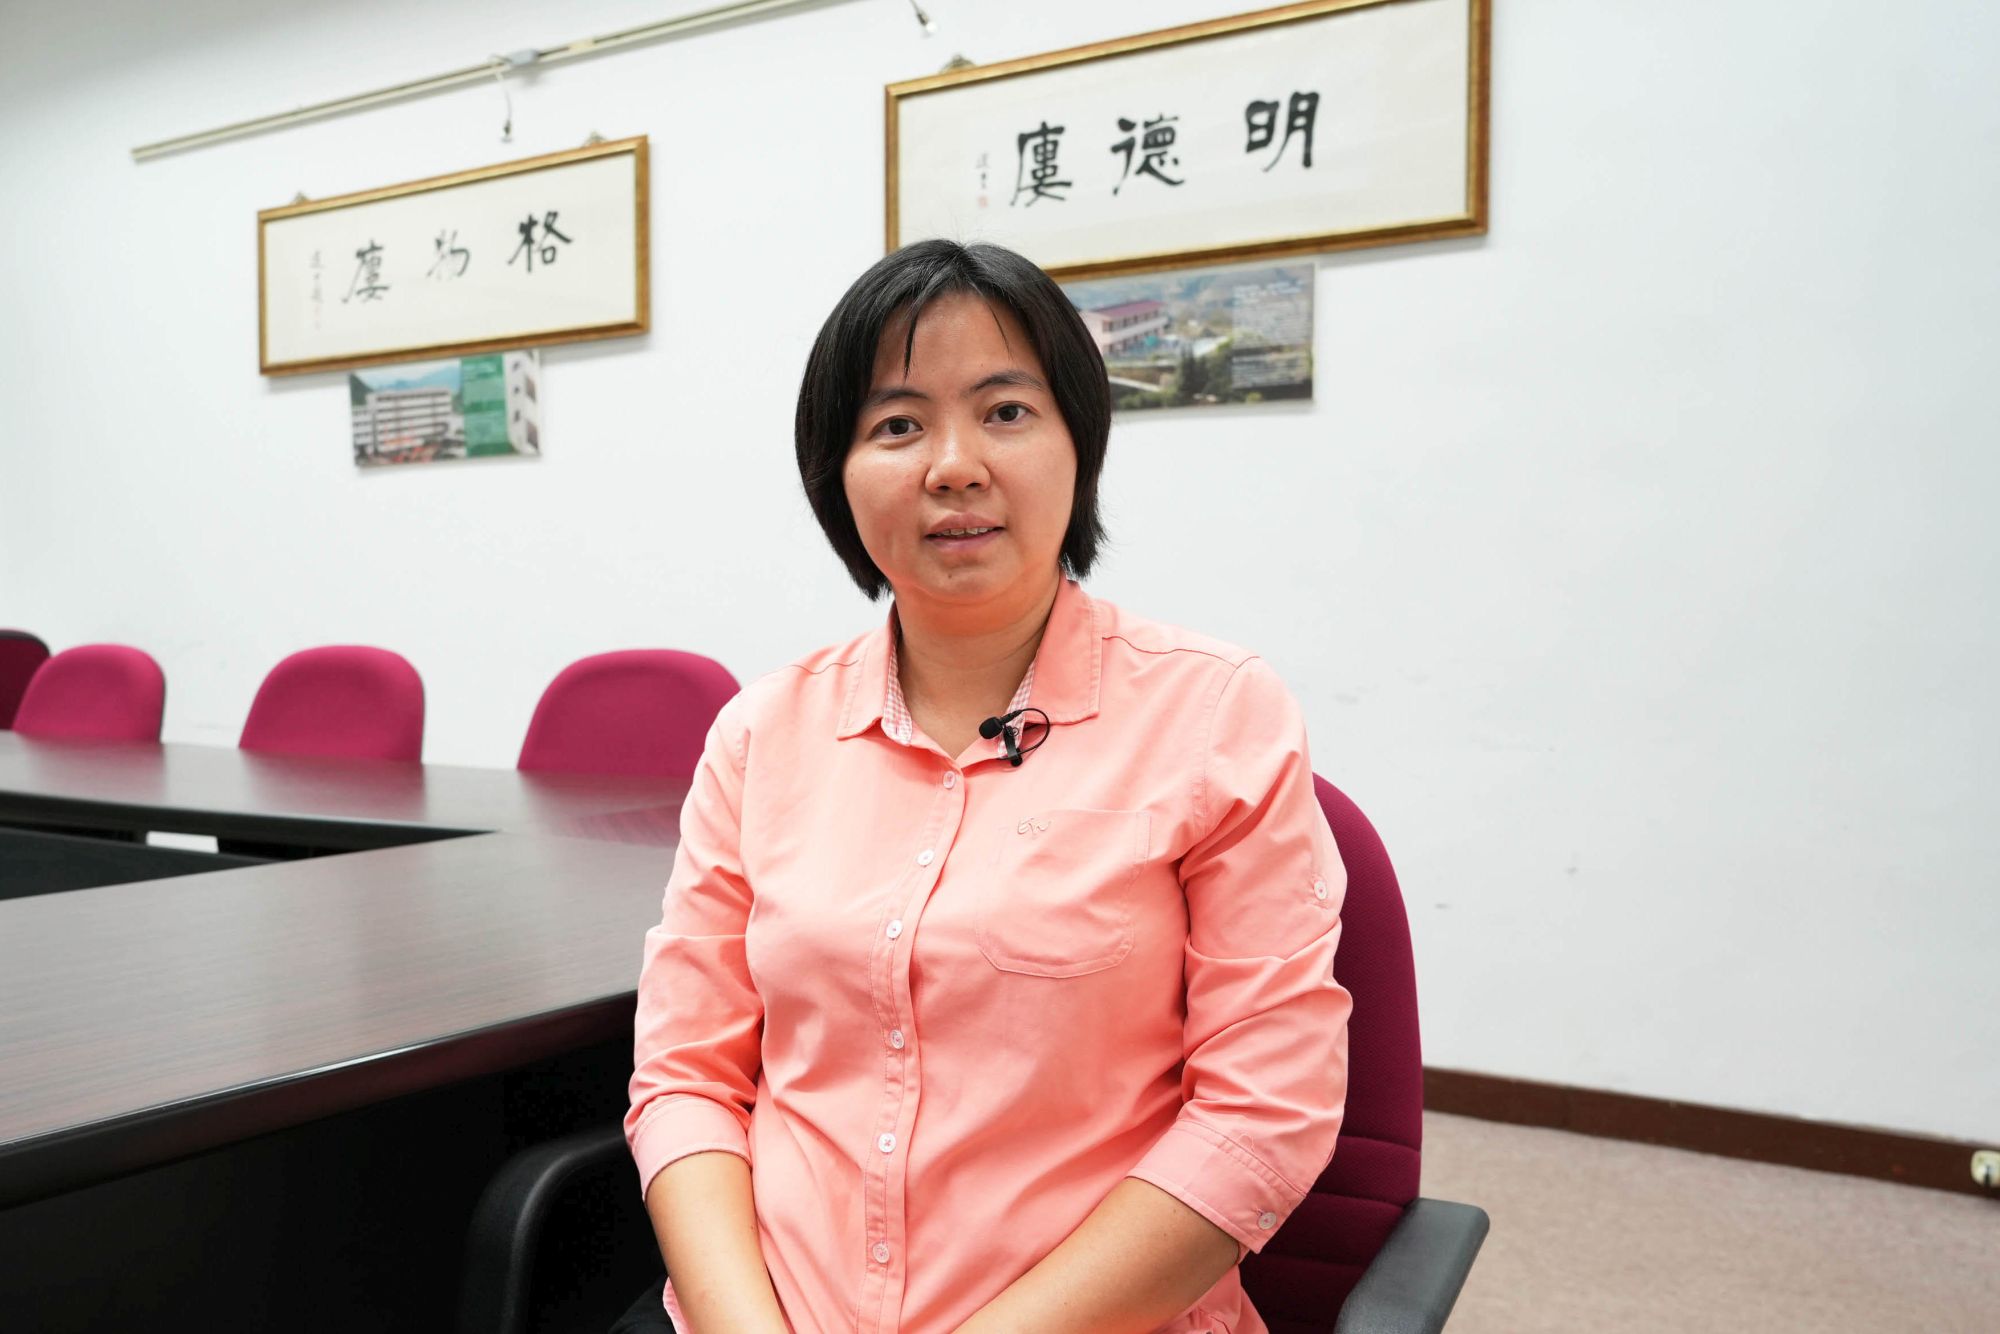 香港大學土木工程系副教授徐婷芳表示，在制定防洪策略時，我們需要考慮空間和土地的限制，以及對環境的影響。